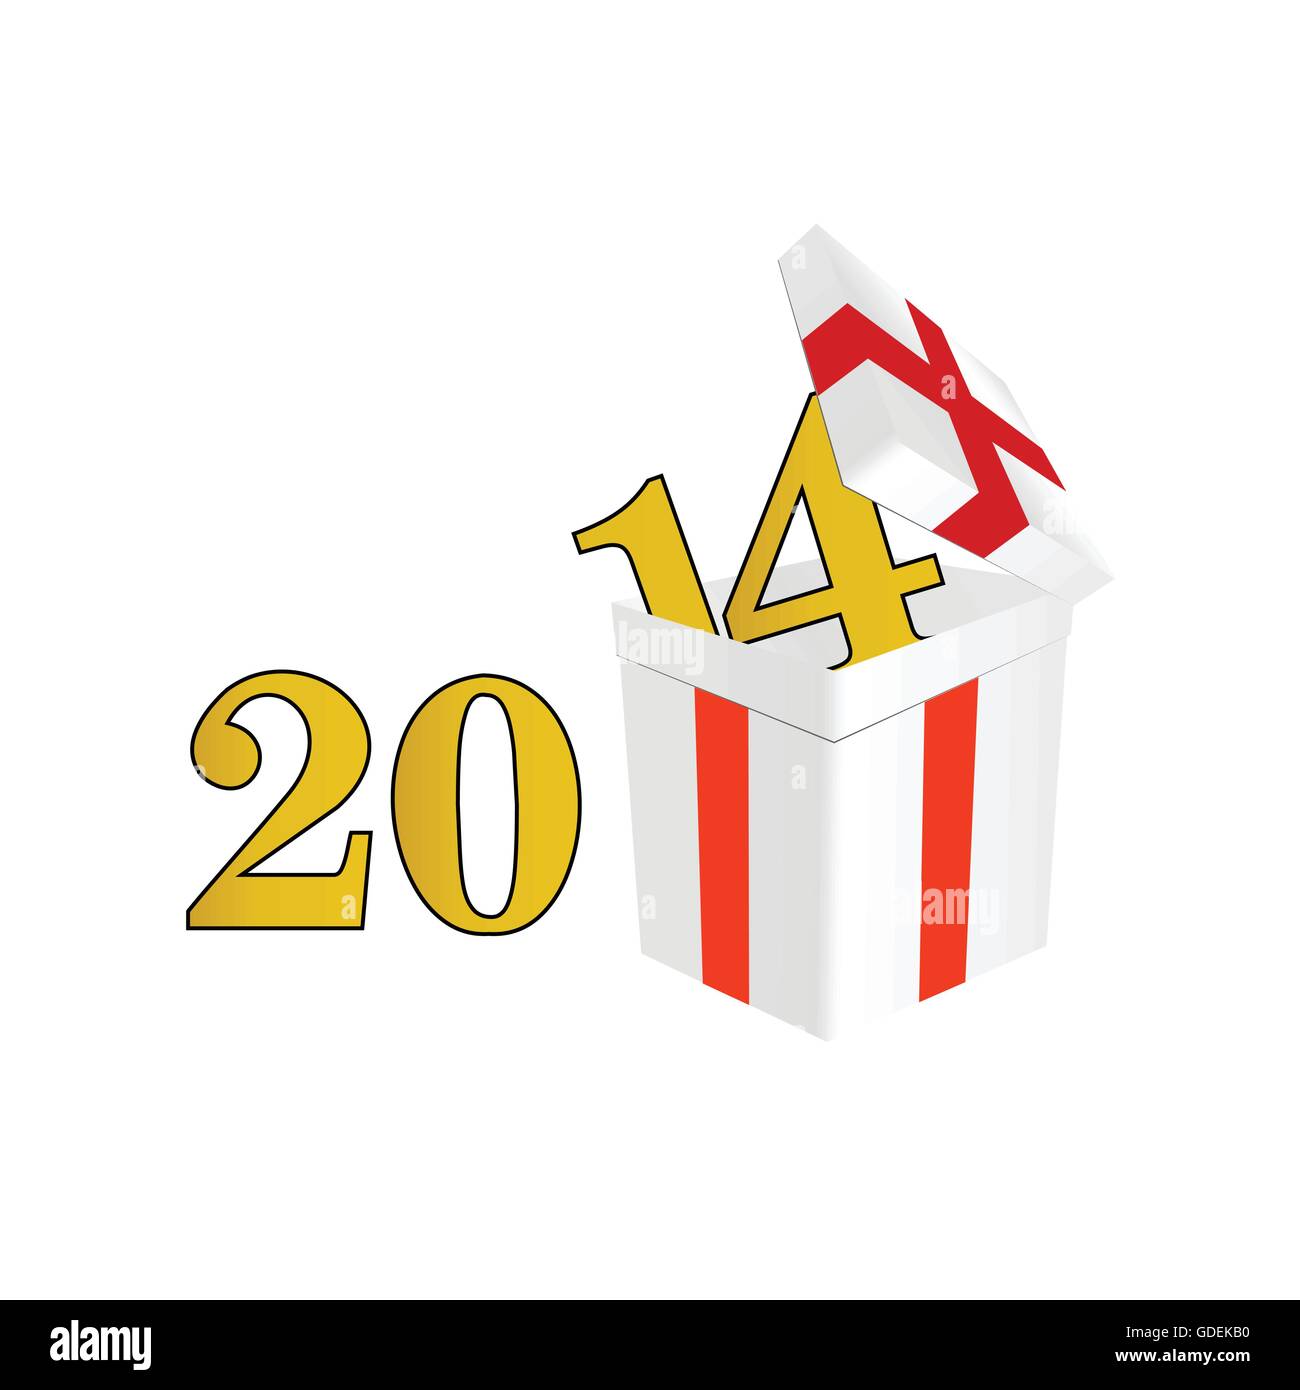 Jahr 2014 ein Paket mit Überraschungen Vektor-illustration Stock Vektor